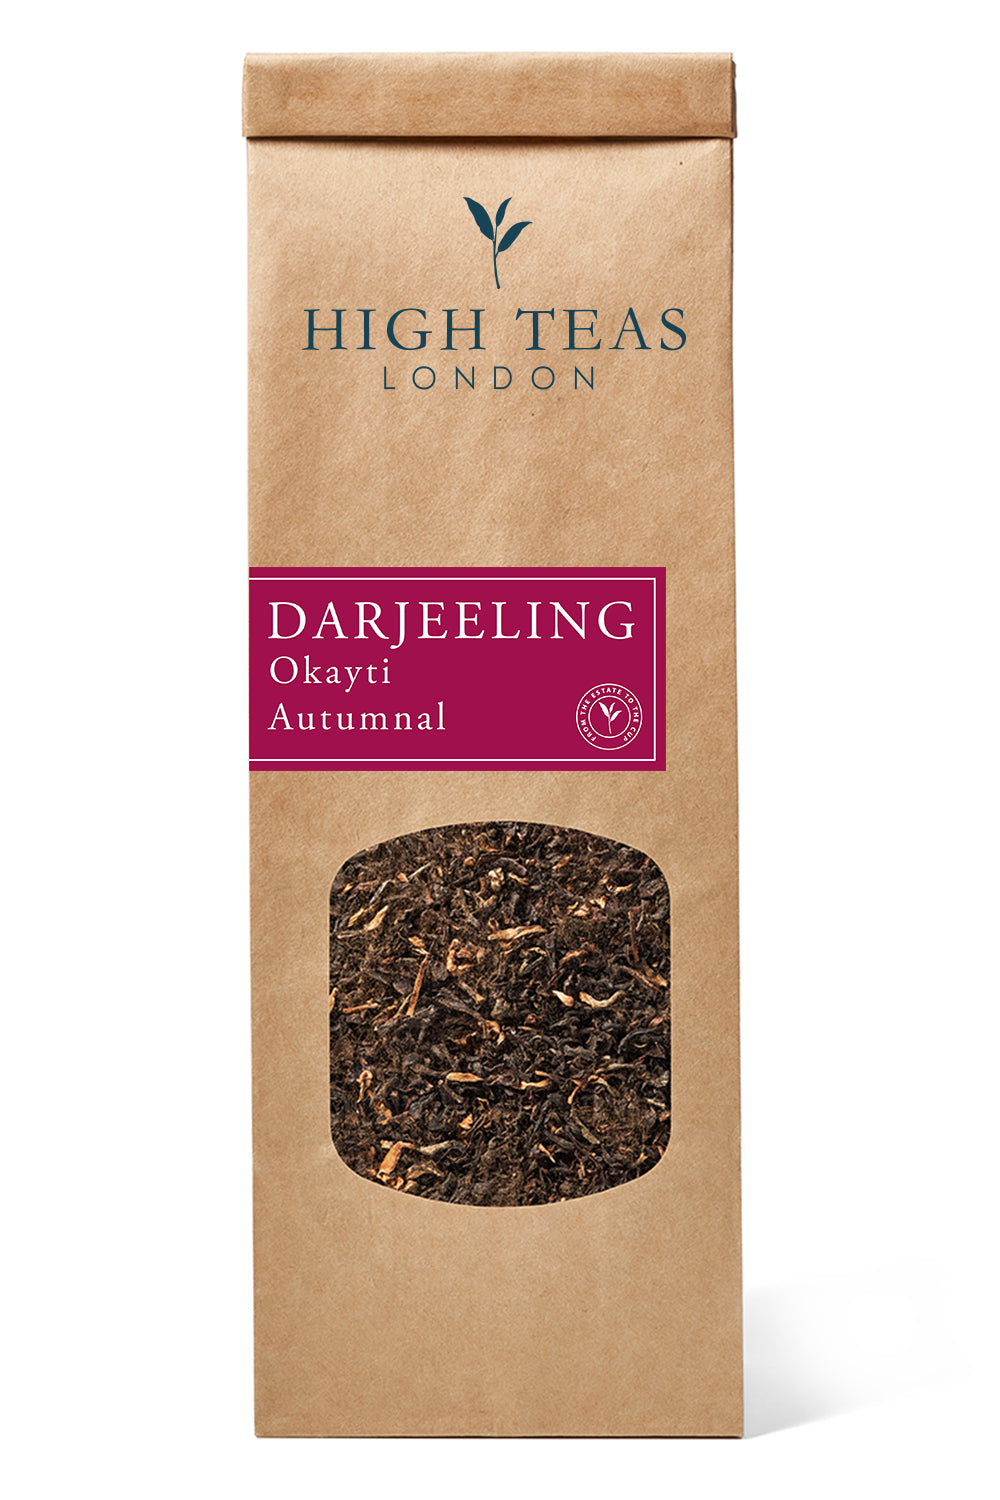 Darjeeling - Okayti Autumnal 2019 FTGFOP1-50g-Loose Leaf Tea-High Teas